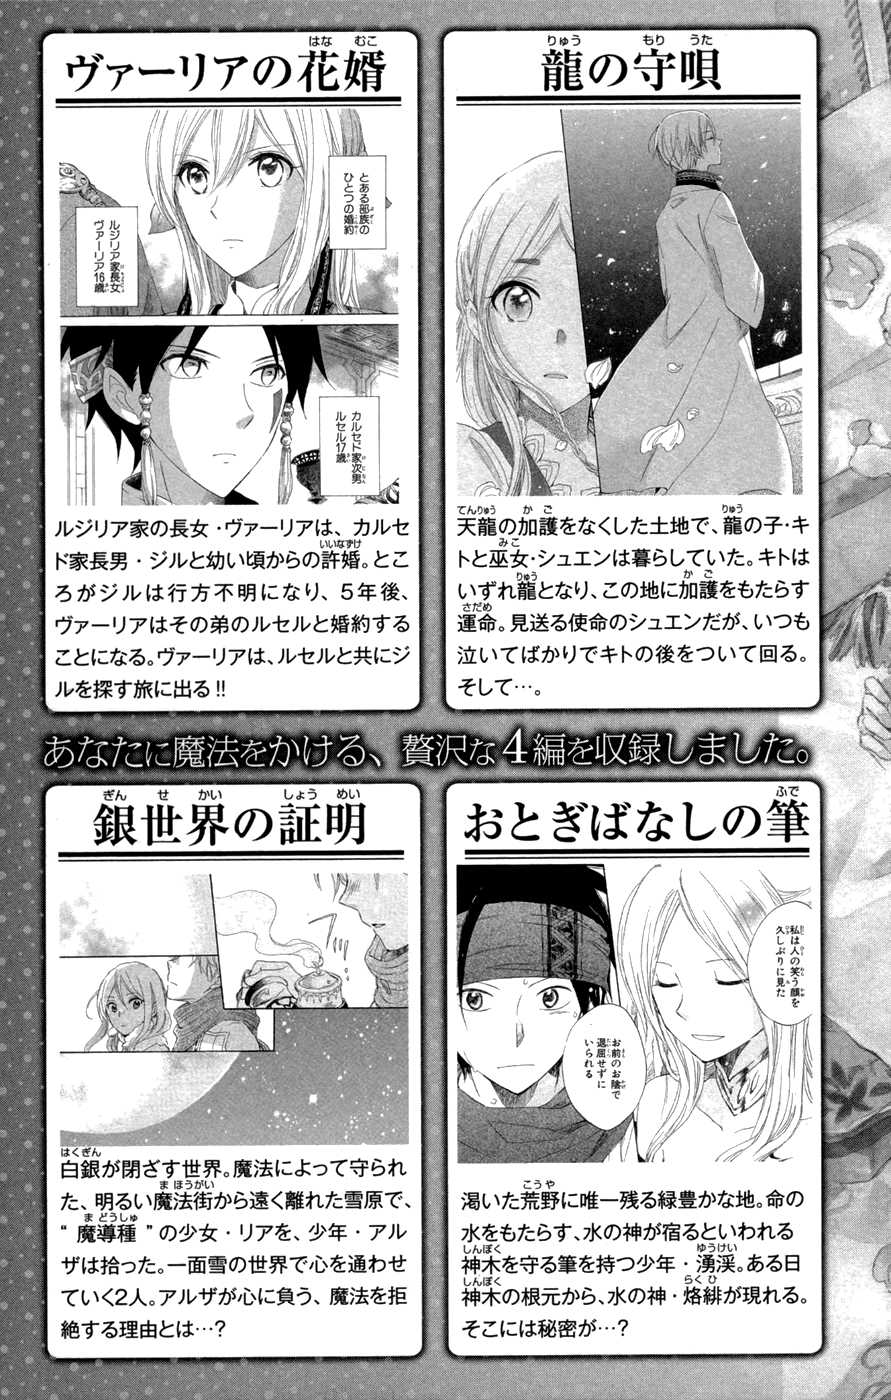 Akagami no Shirayukihime Vol.11 Ch.49.2